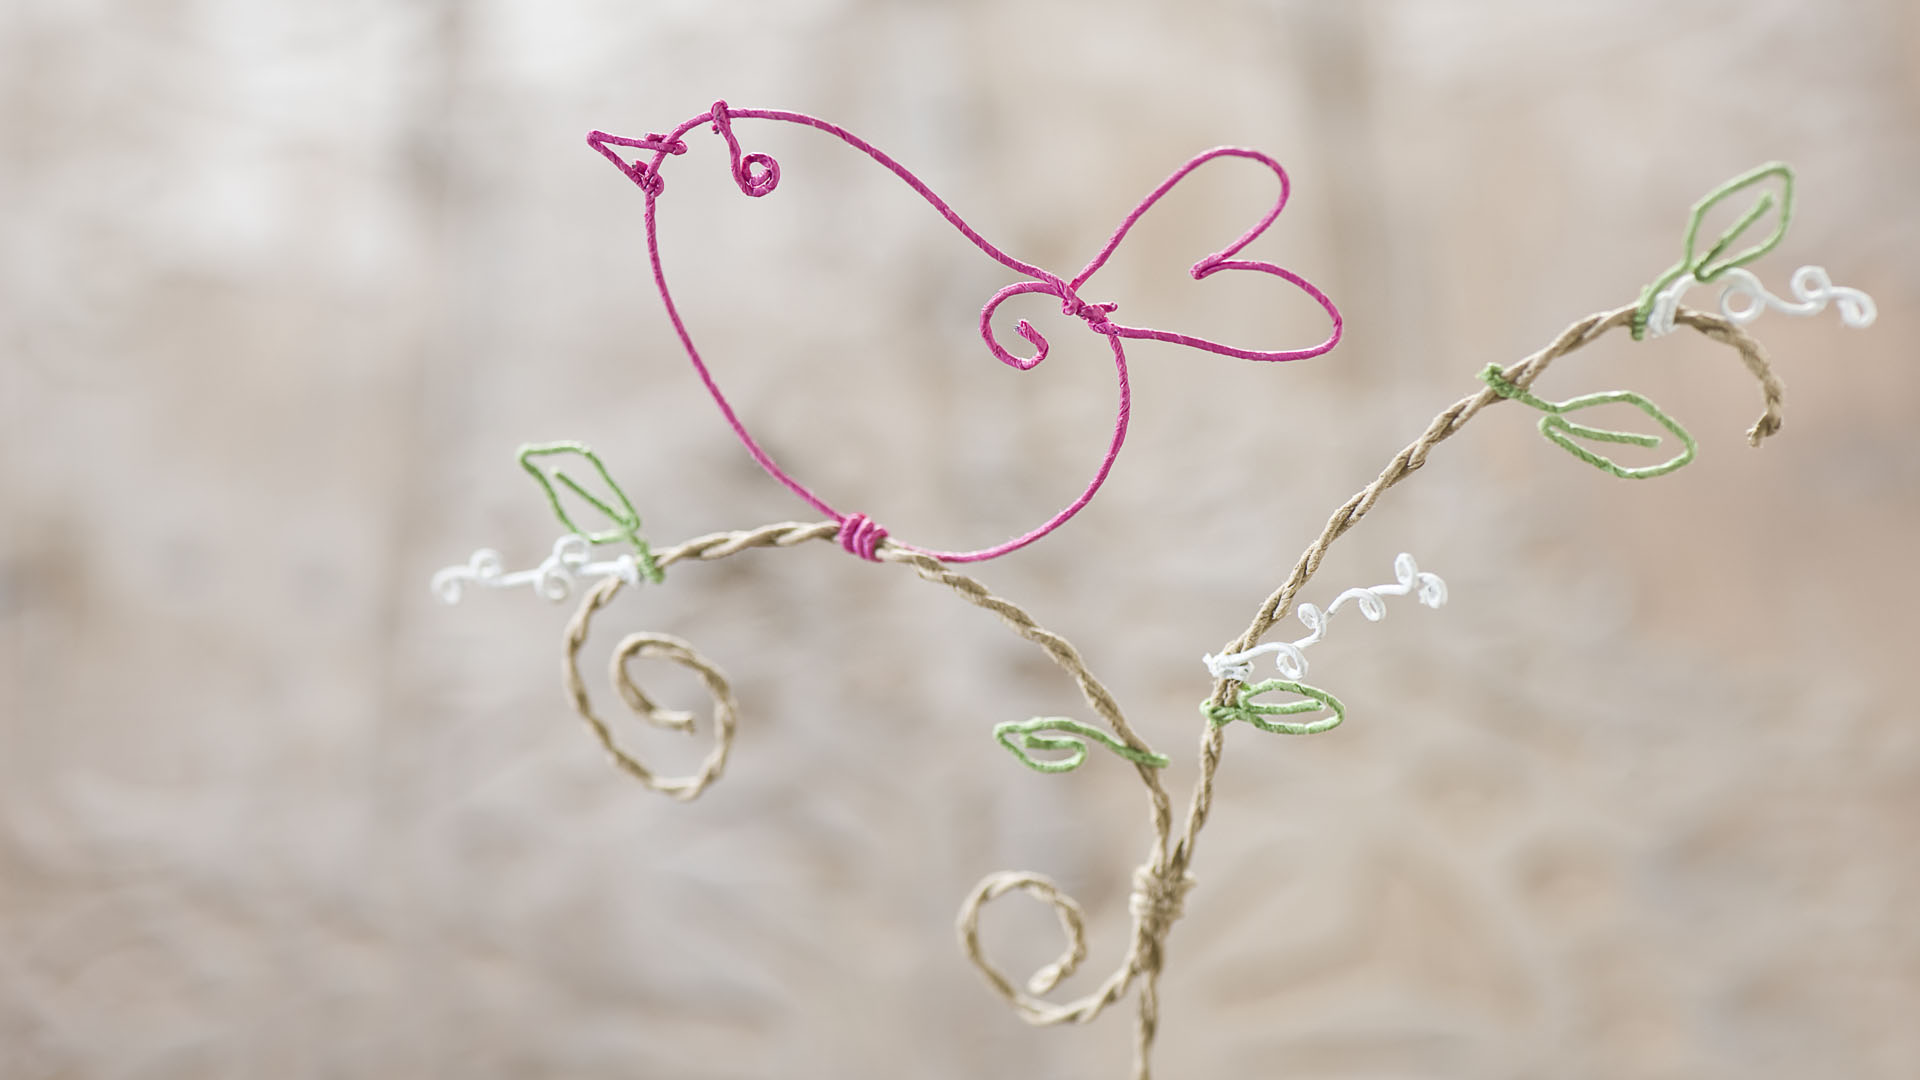 Ideen für Papierdraht: Vogelgezwitscher | Vogel aus Papierdraht in Pink auf Zweig mit grünen Blättern und weißen Blüten